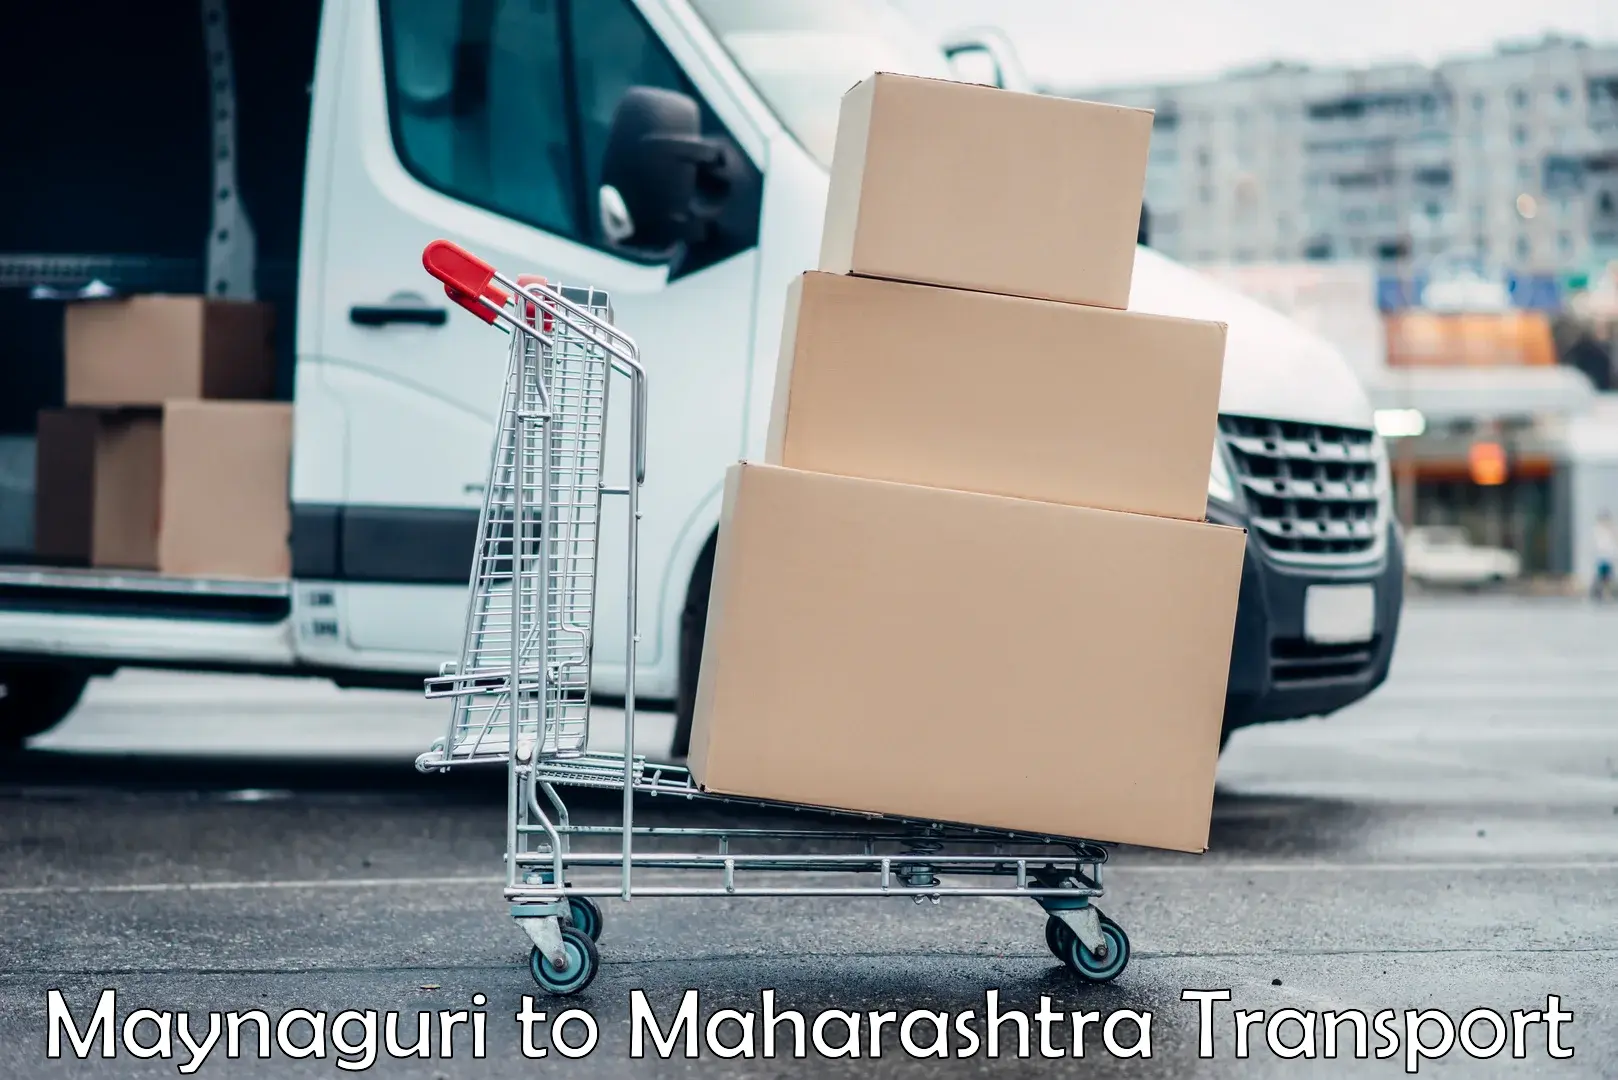 Online transport booking Maynaguri to Vaijapur